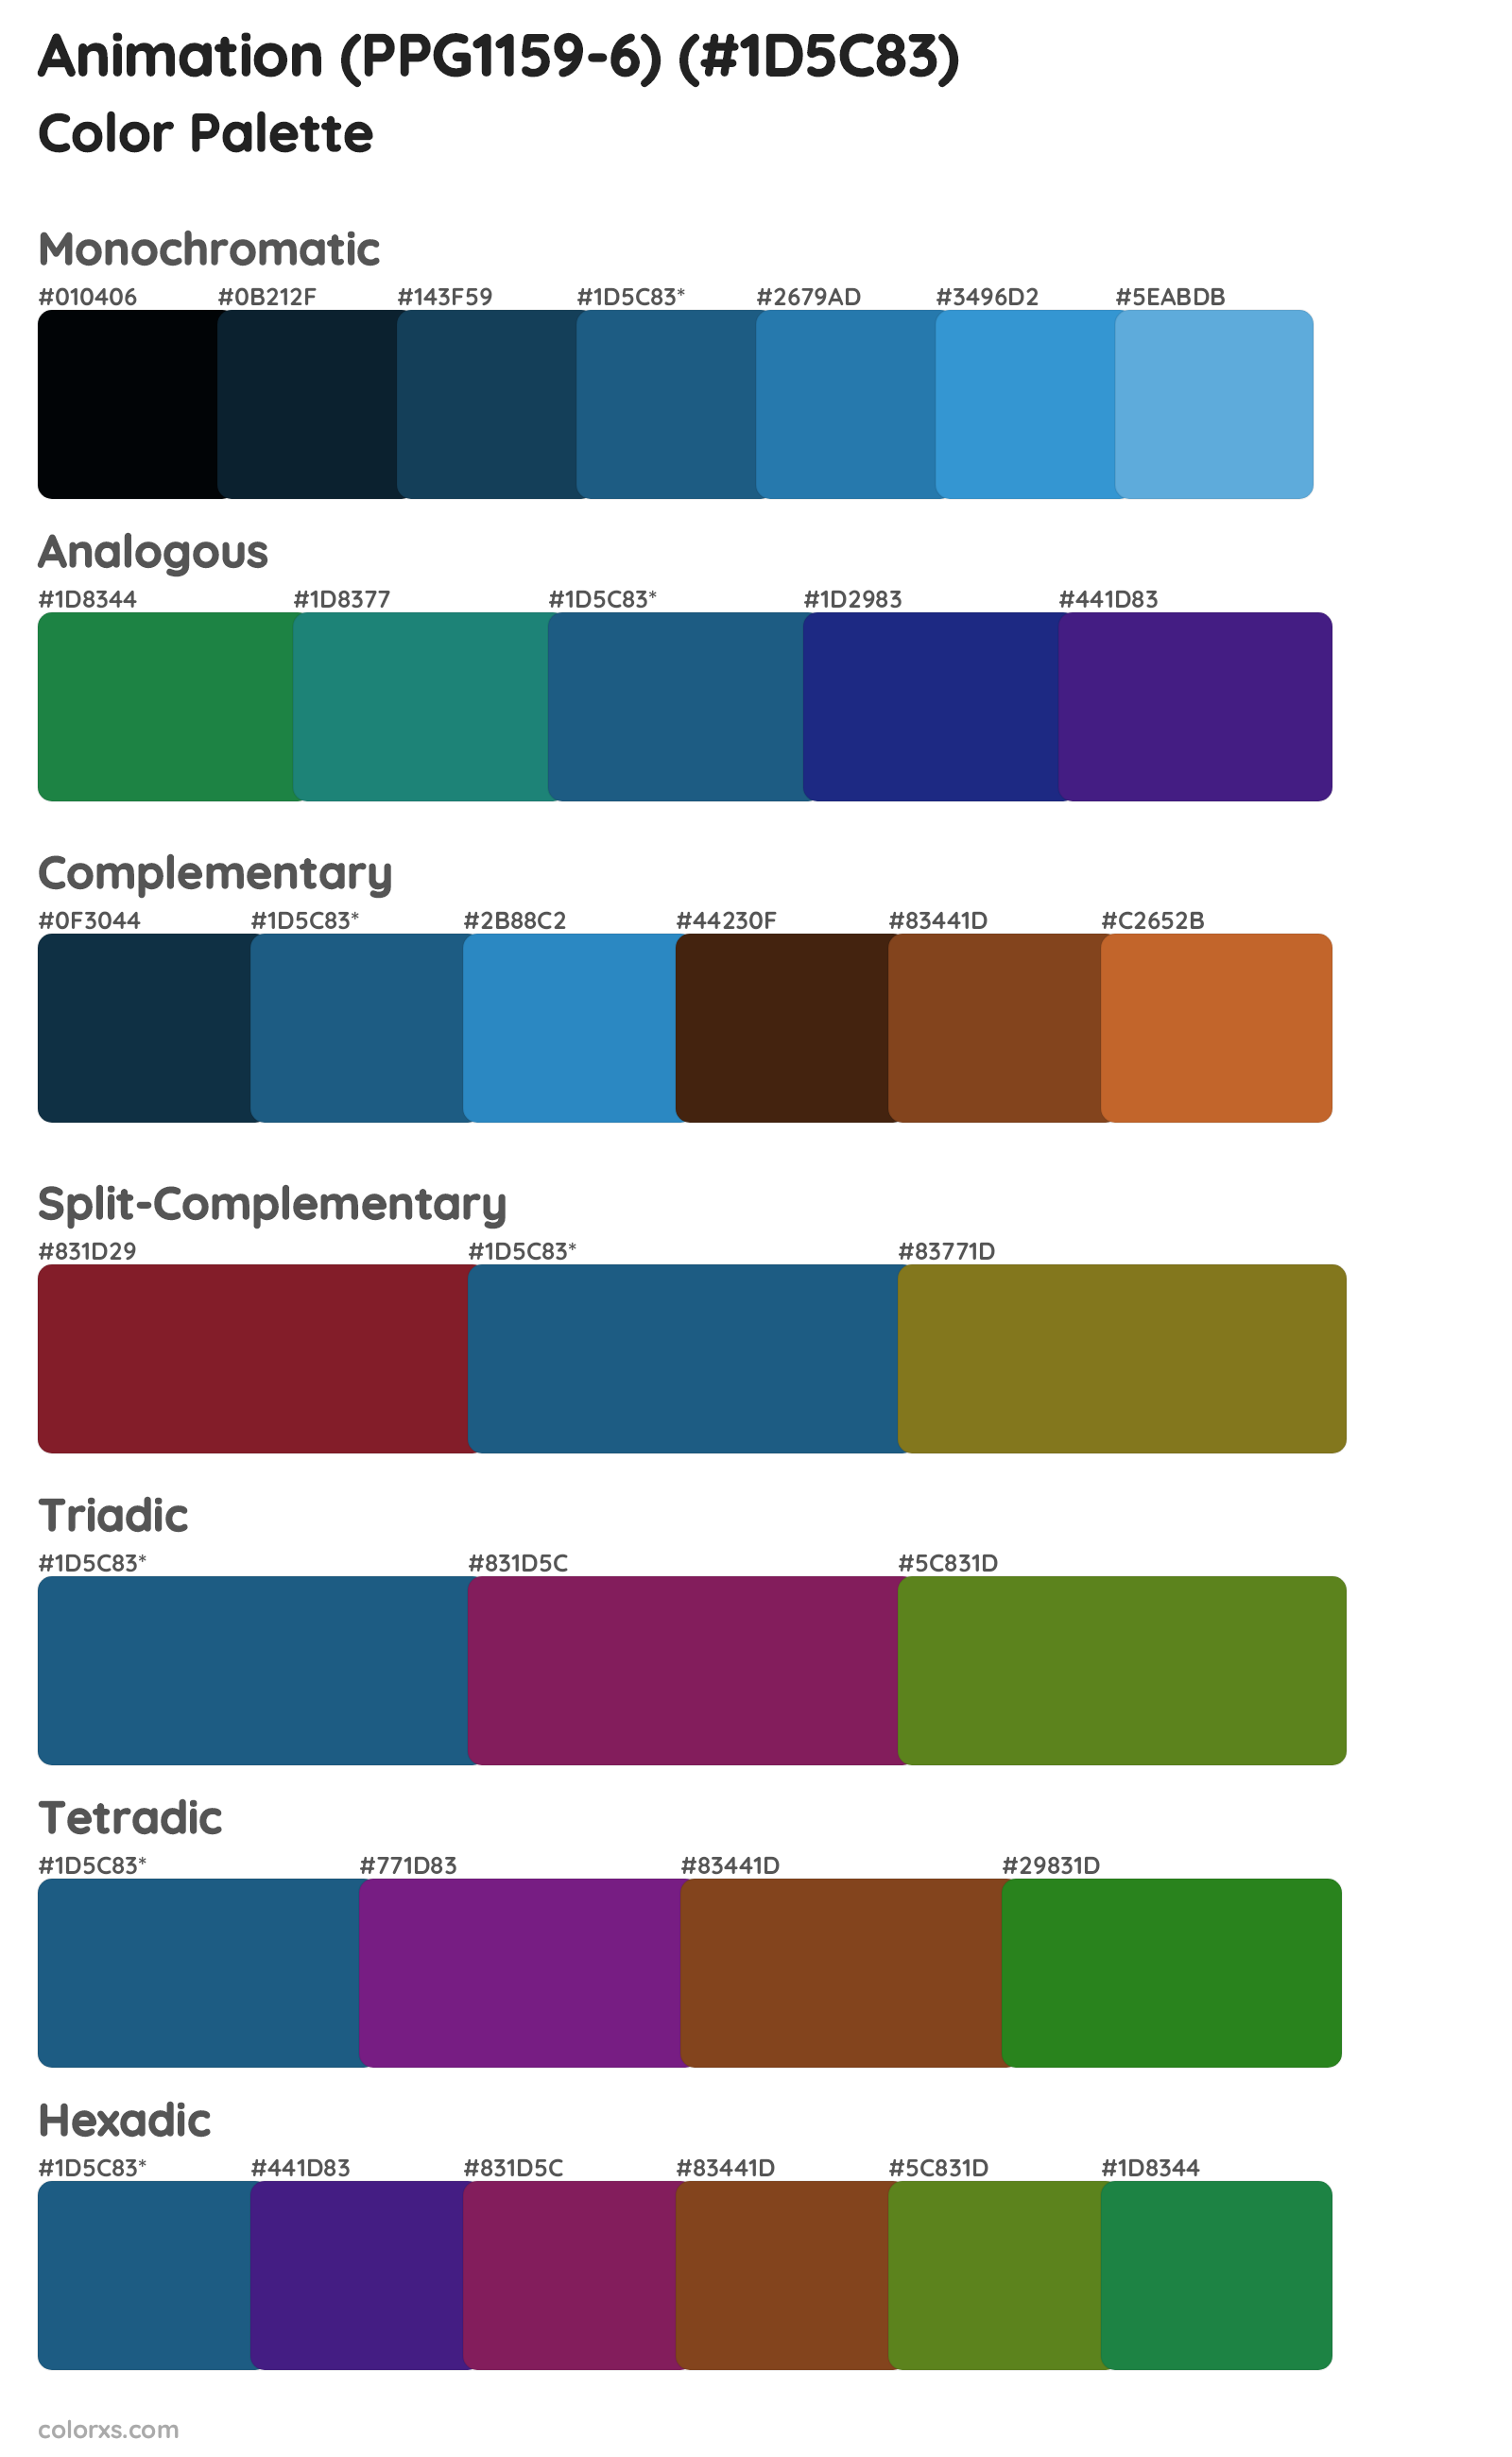 Animation (PPG1159-6) Color Scheme Palettes